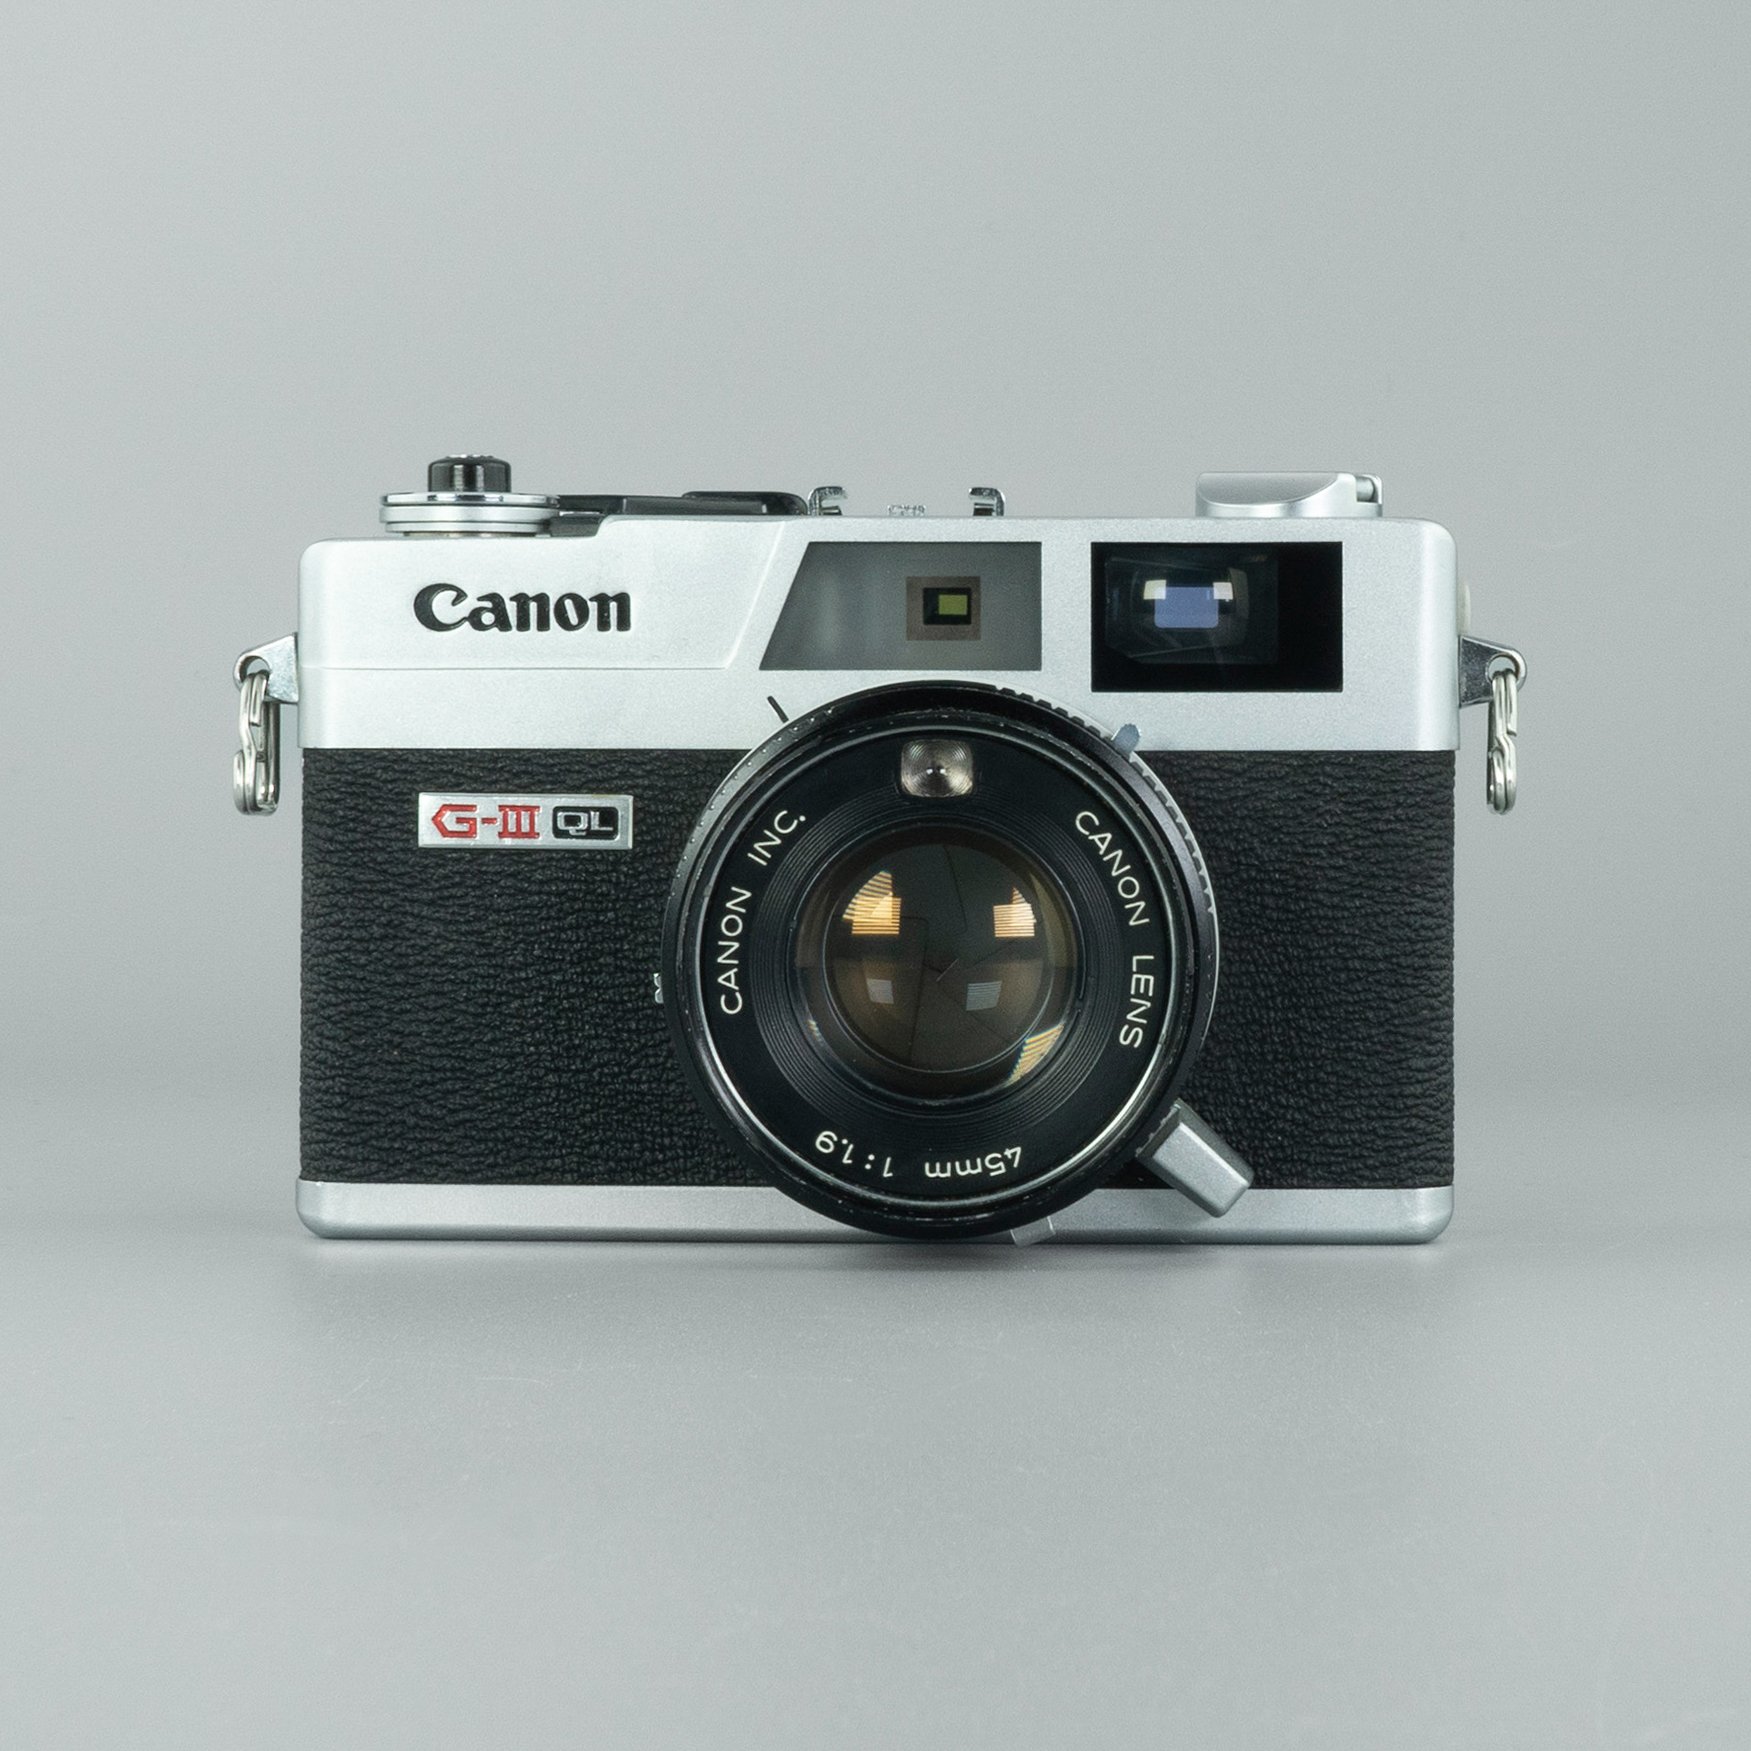 買物代行 美品 Rangefinder GIII QL19 Canonet Canon フィルムカメラ